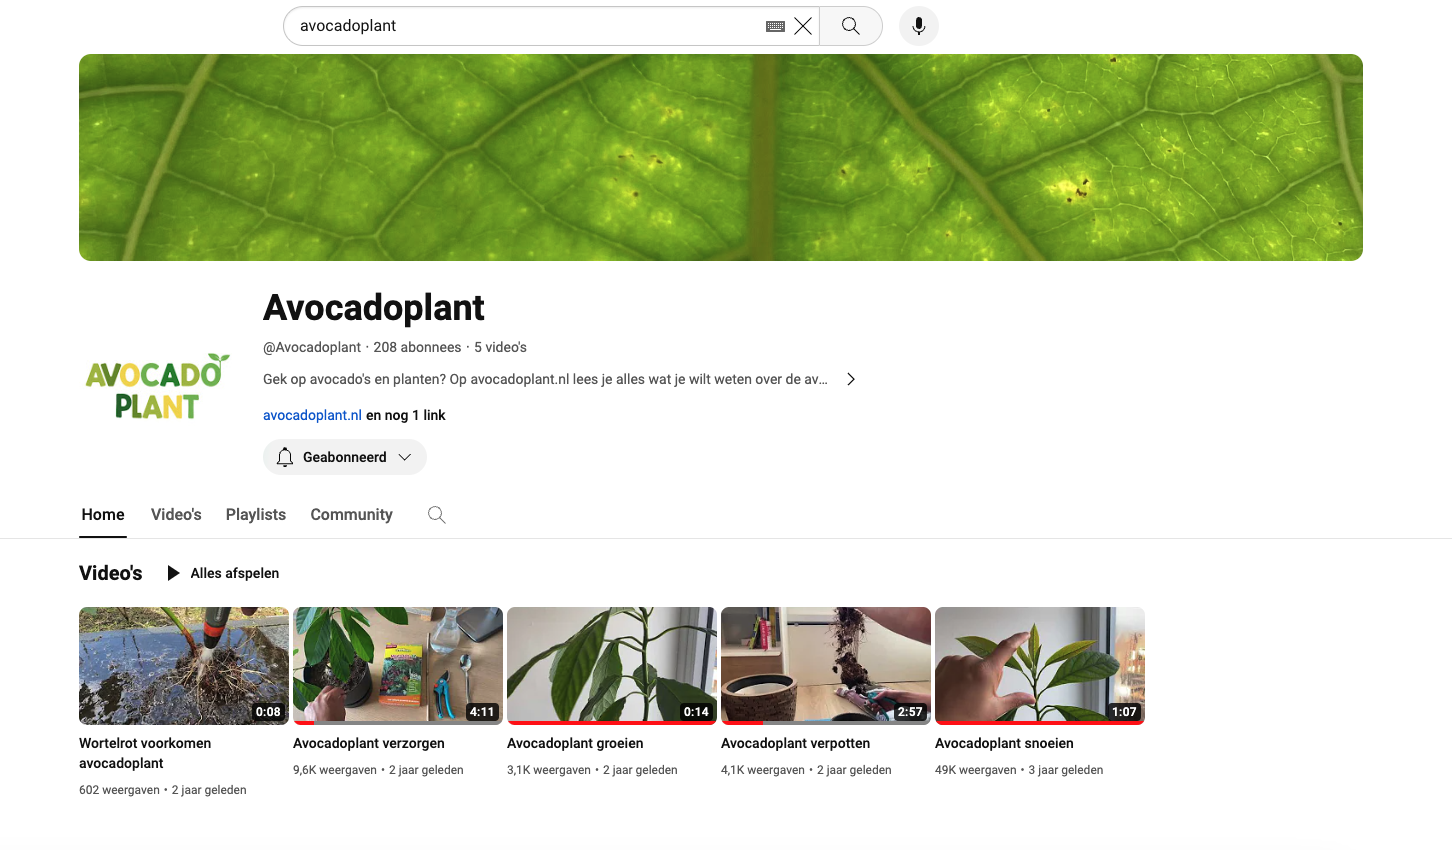 Domeinnaam avocadoplant.nl met 40K bezoekers per jaar-scherm-afbeelding-2024-01-om-08-png